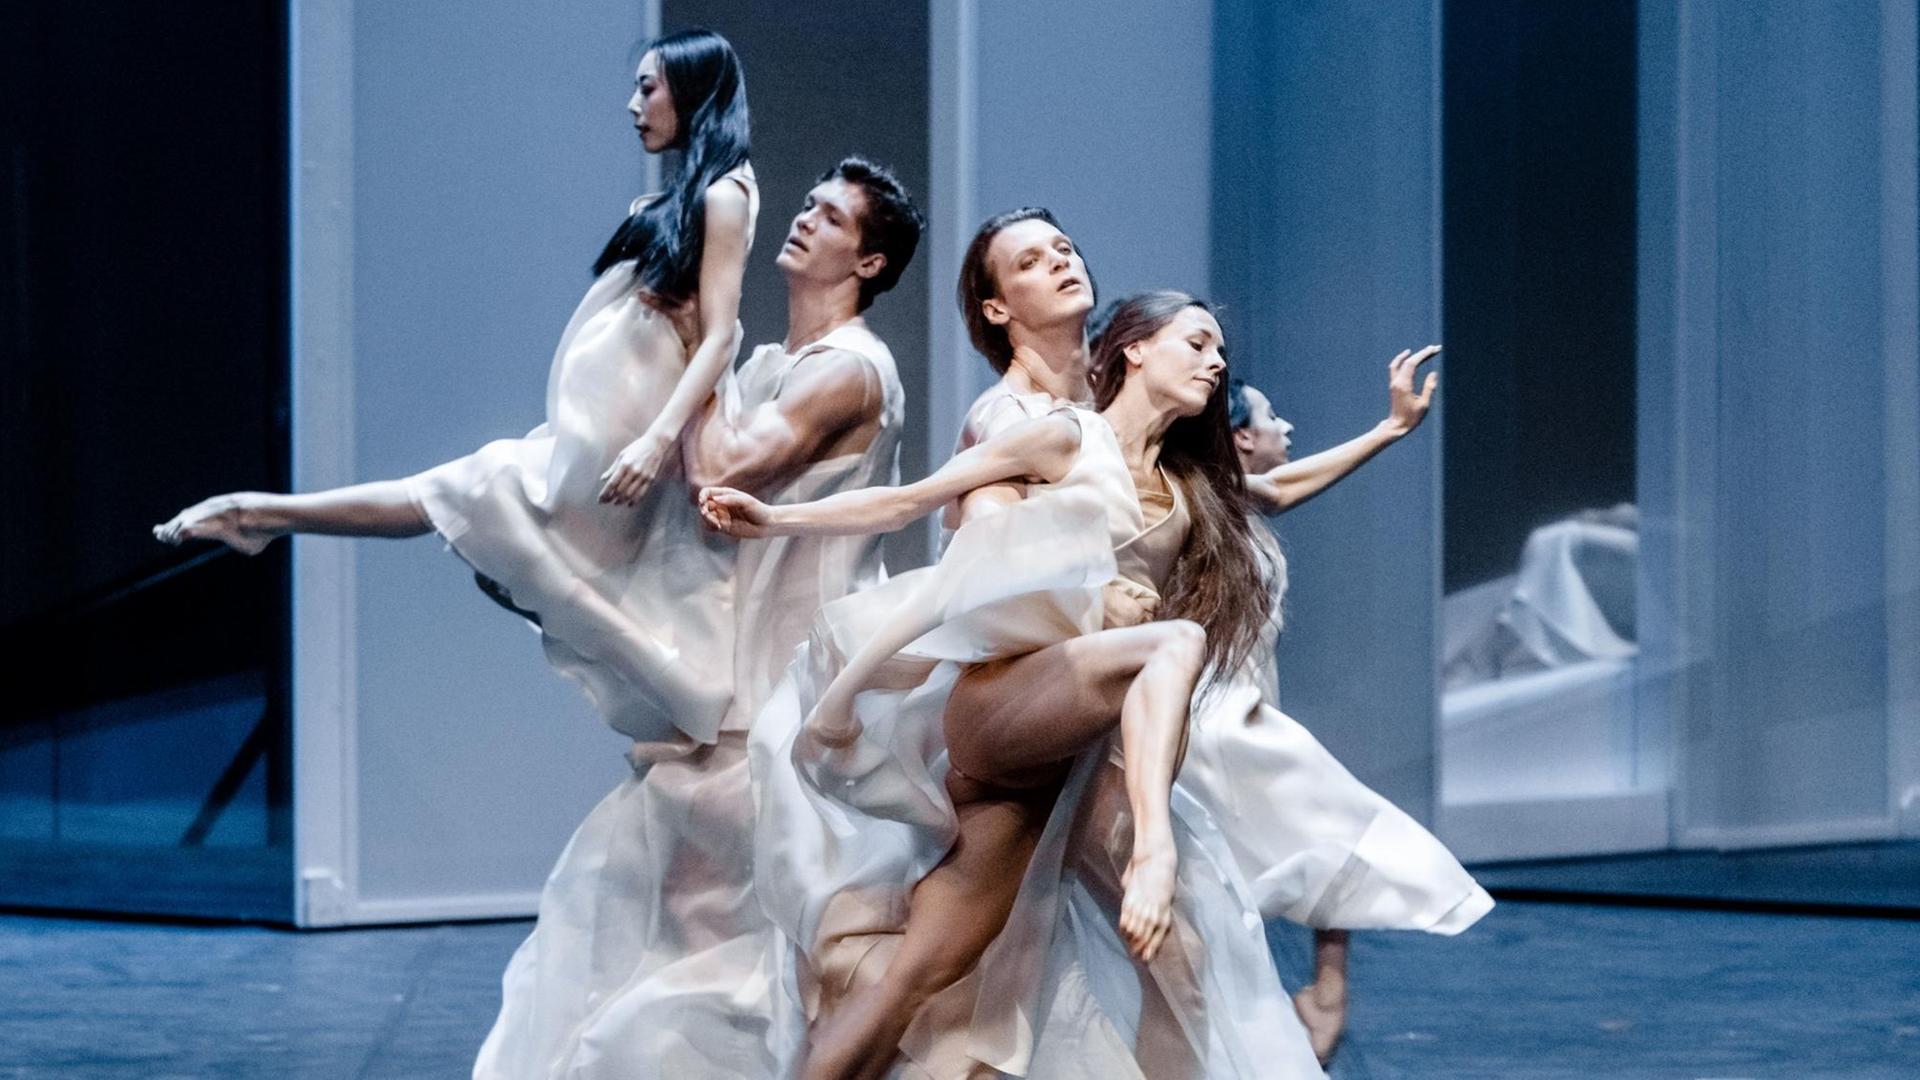 30.01.2019, Hamburg: Die Tänzer Edvin Revazov (2.vr) als "Orphée" und Anna Laudere (r) als "Eurydice" tanzen mit zwei Tänzern des Ballettensembles auf der Fotoprobe von "Orphée et Eurydice".